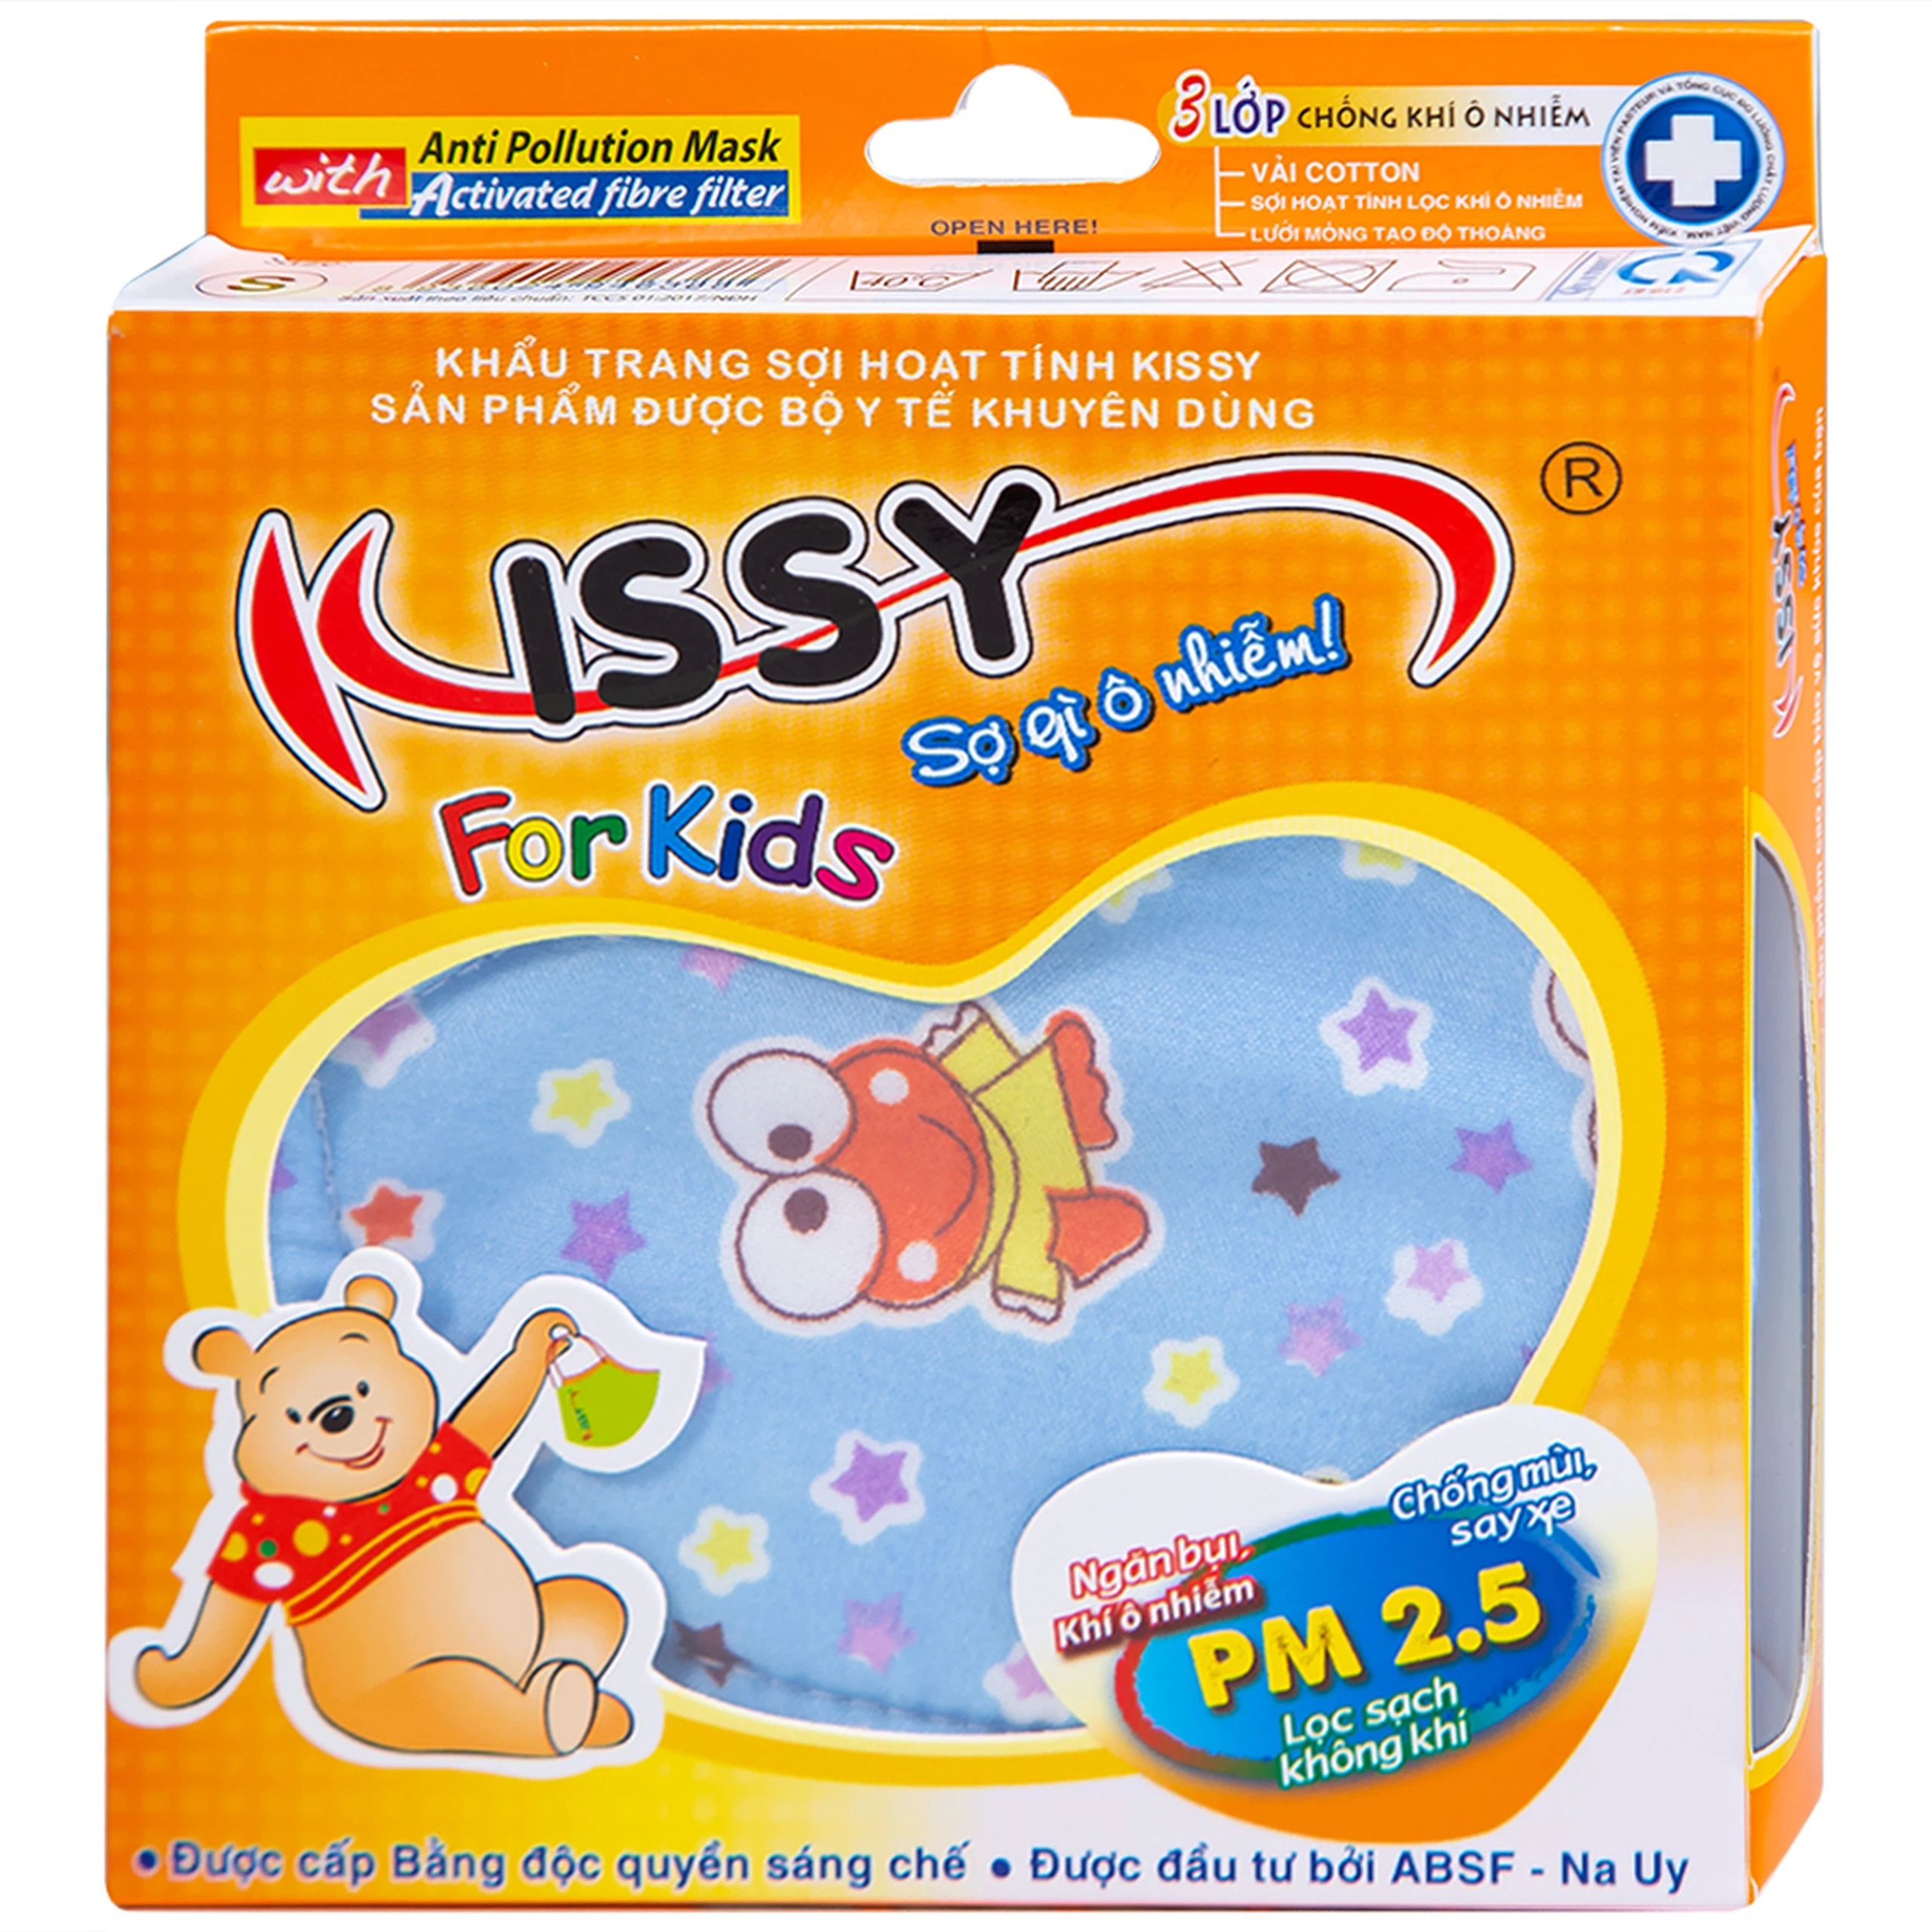 Khẩu trang sợi hoạt tính Kissy For Kids size S cho bé giúp lọc sạch không khí, ngăn bụi, khí ô nhiễm